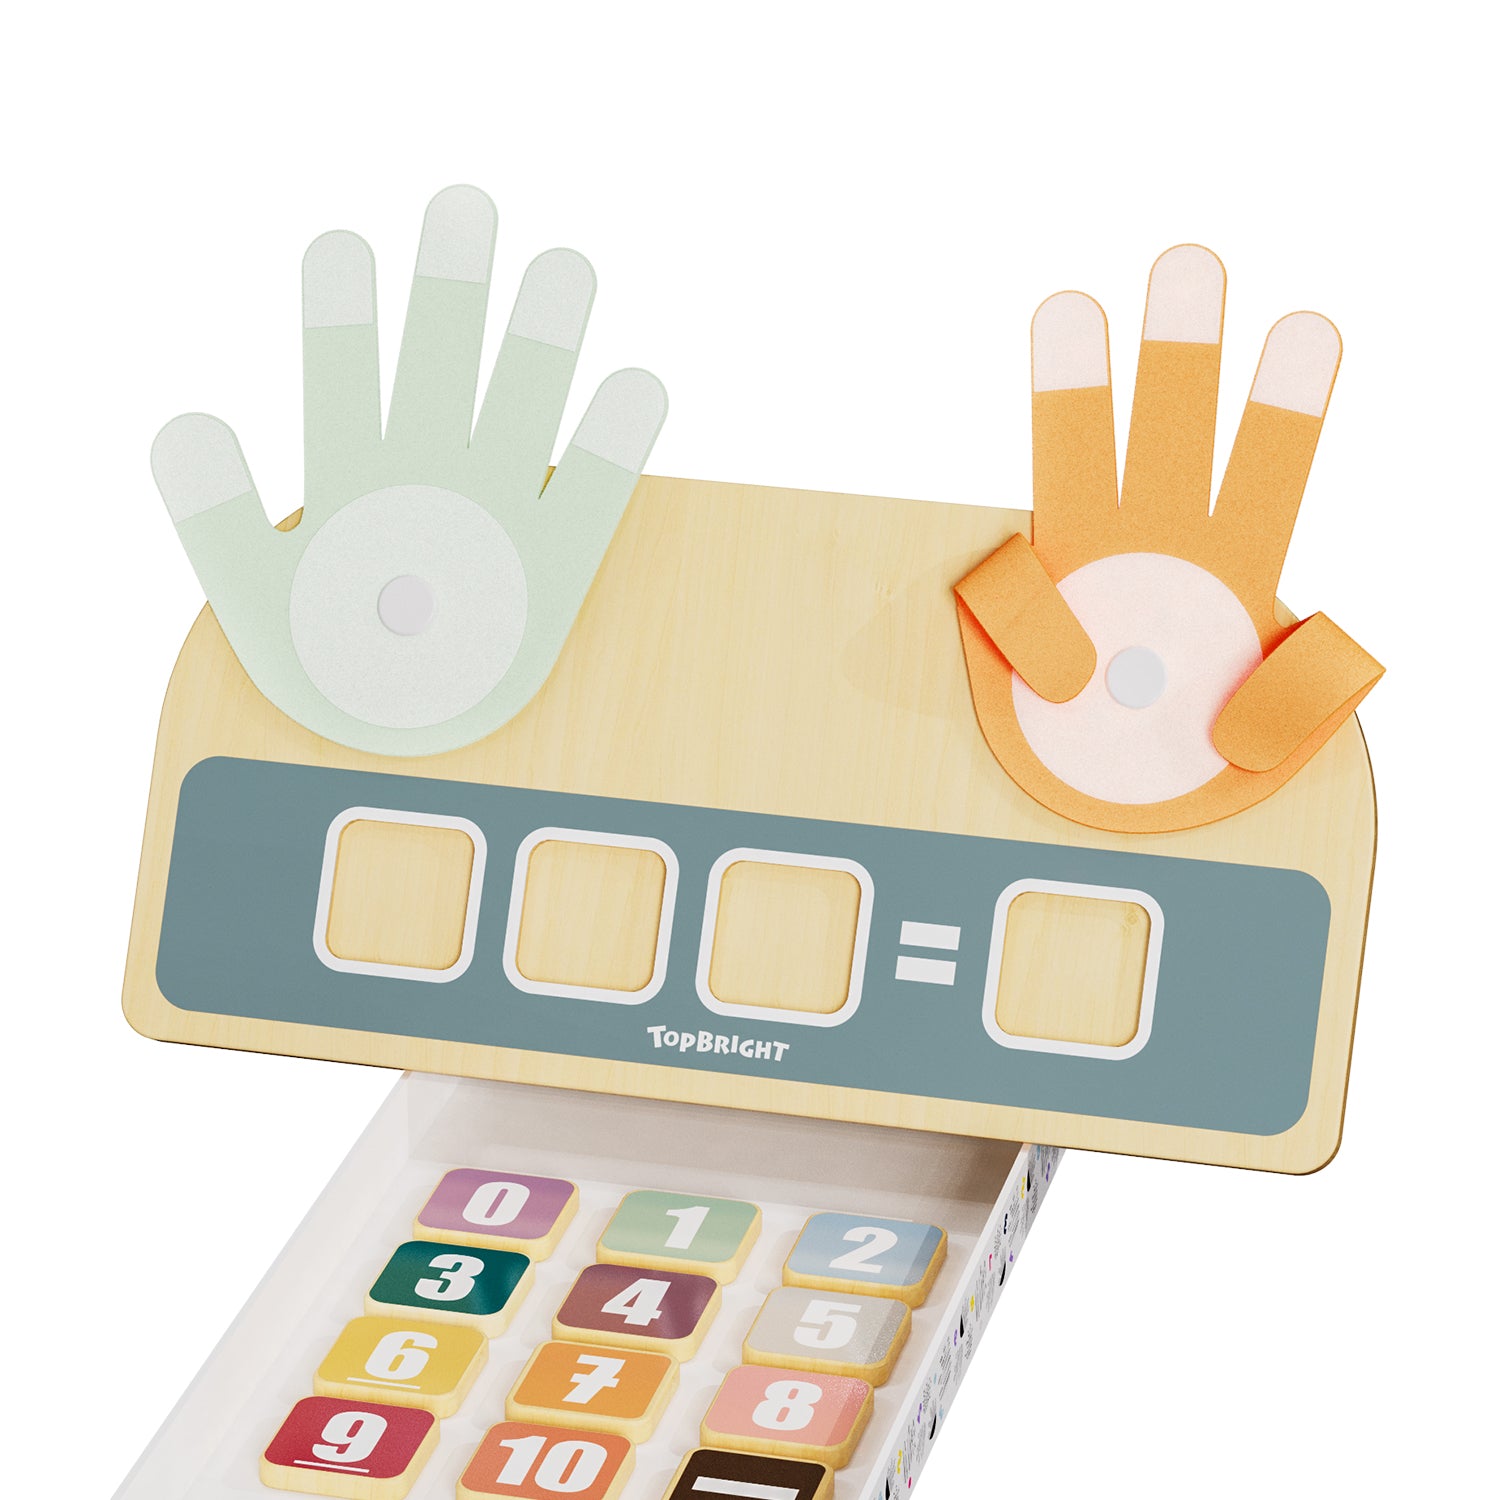 Die Aufgabenkarten und Holzplättchen befinden sich während des Spielens in der Box unter dem Holzbrett, auf dem die Finger befestigt sind. 